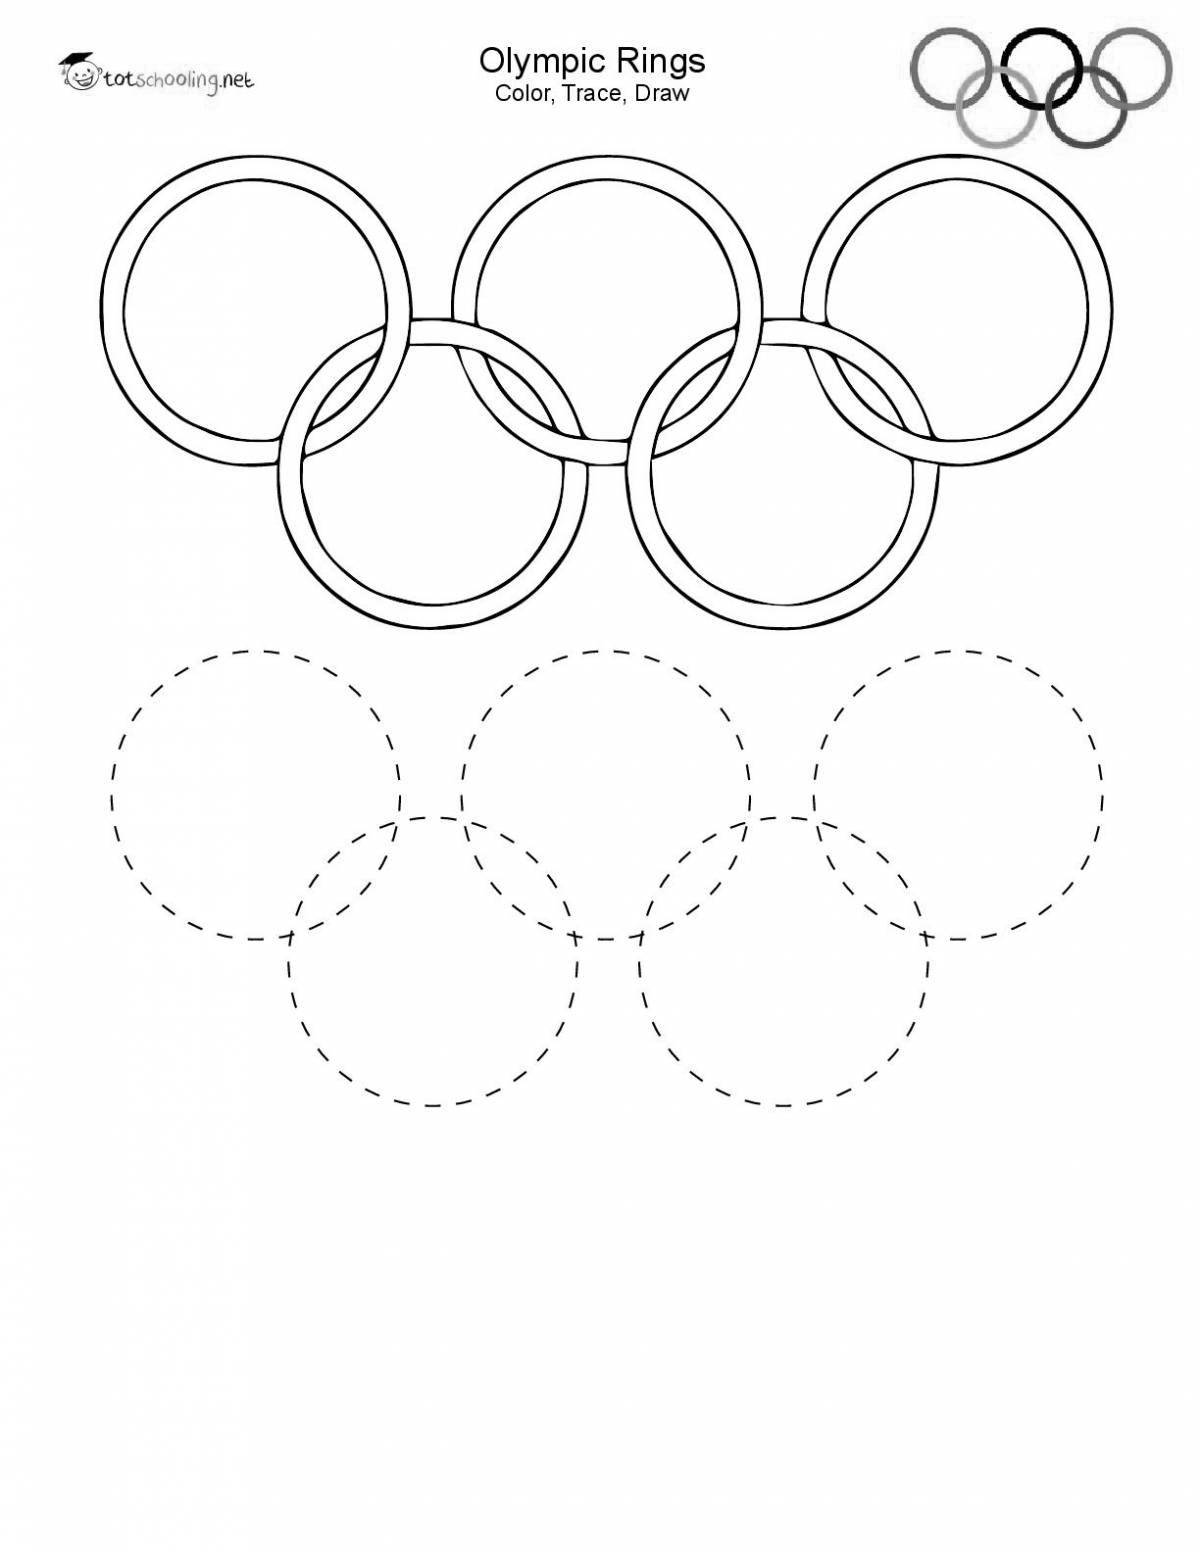 Раскраска праздничные кольца олимпийских игр